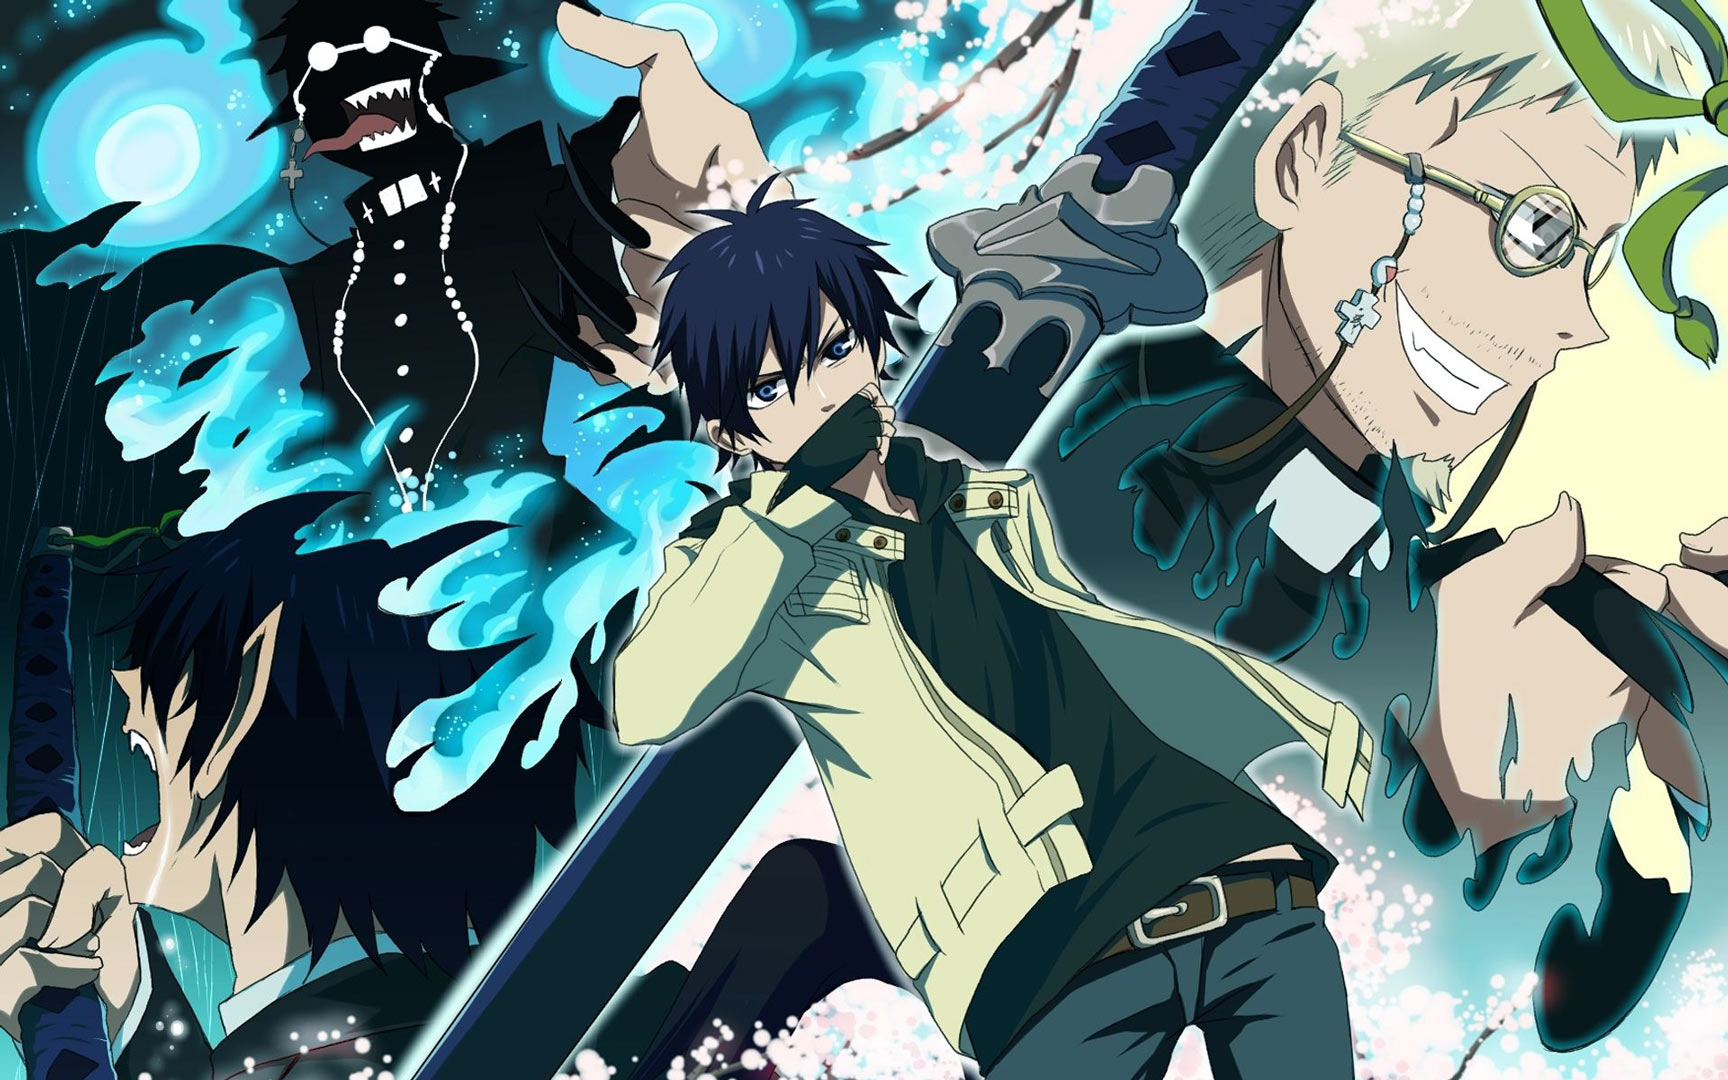 Anime guerrier bleu, un jeune homme avec une épée à la main